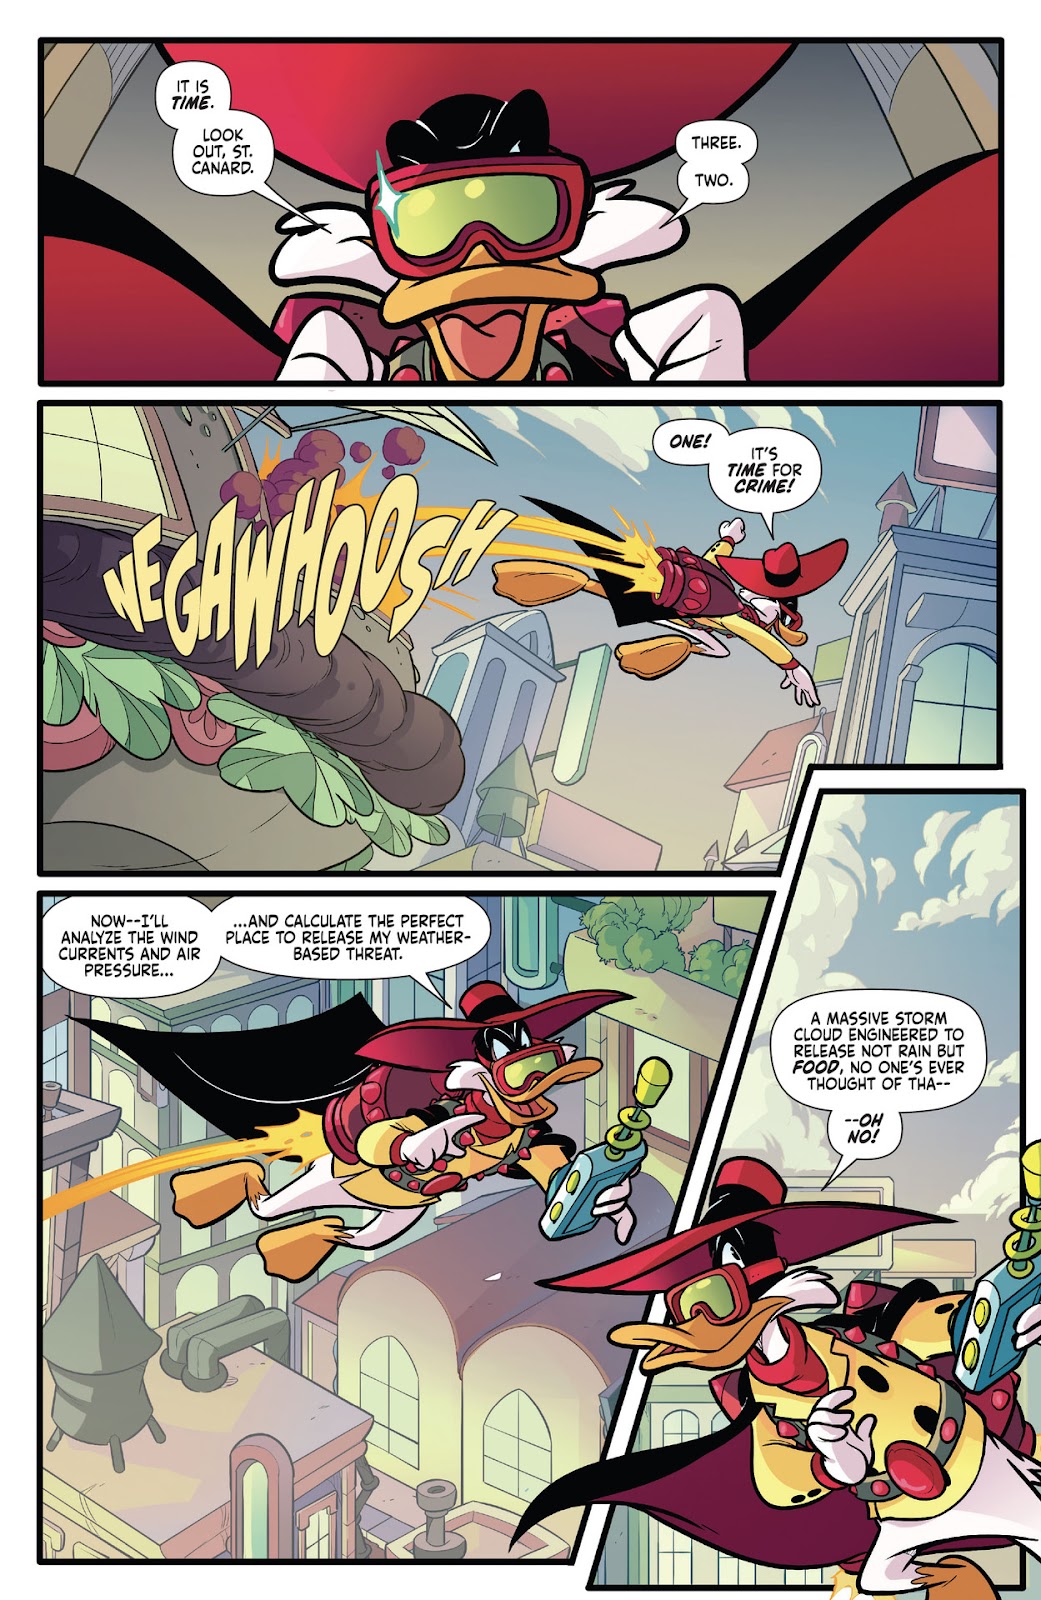 Darkwing Duck: Negaduck issue 1 - Page 13